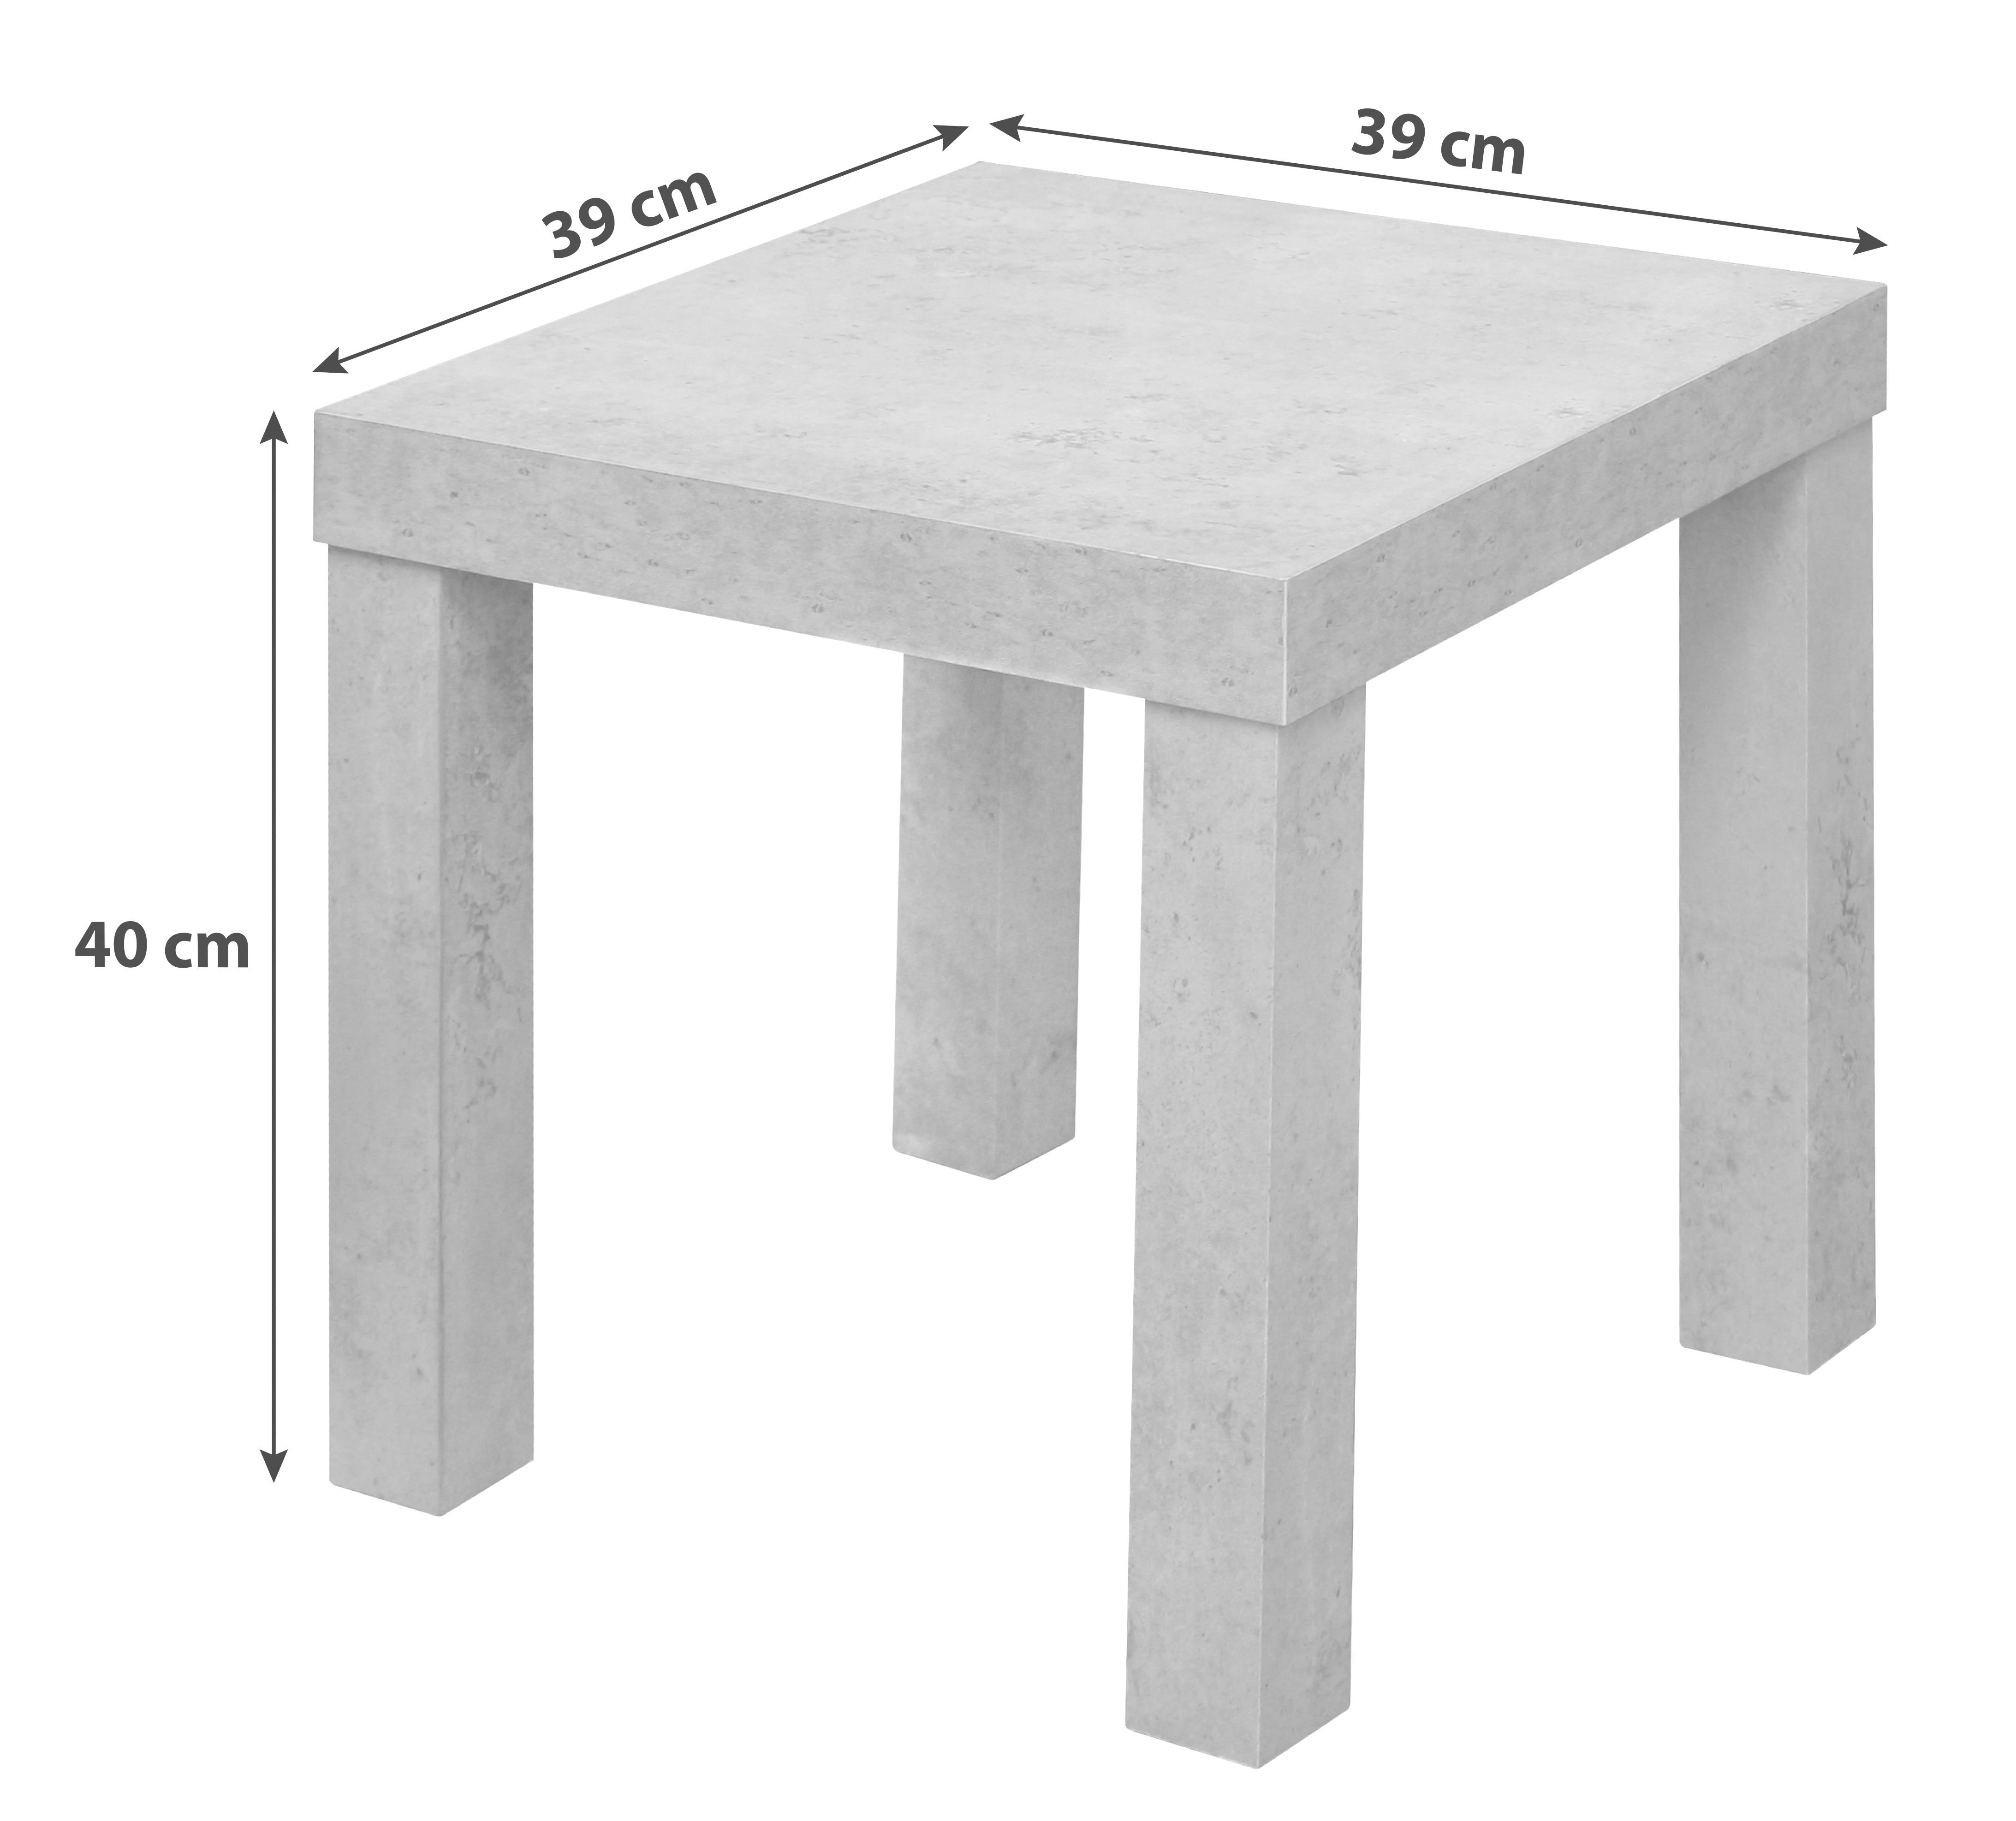 Odkládací Stolek Normen *cenovy Trhak* - bílá, Moderní, kompozitní dřevo (39/40/39cm) - Based